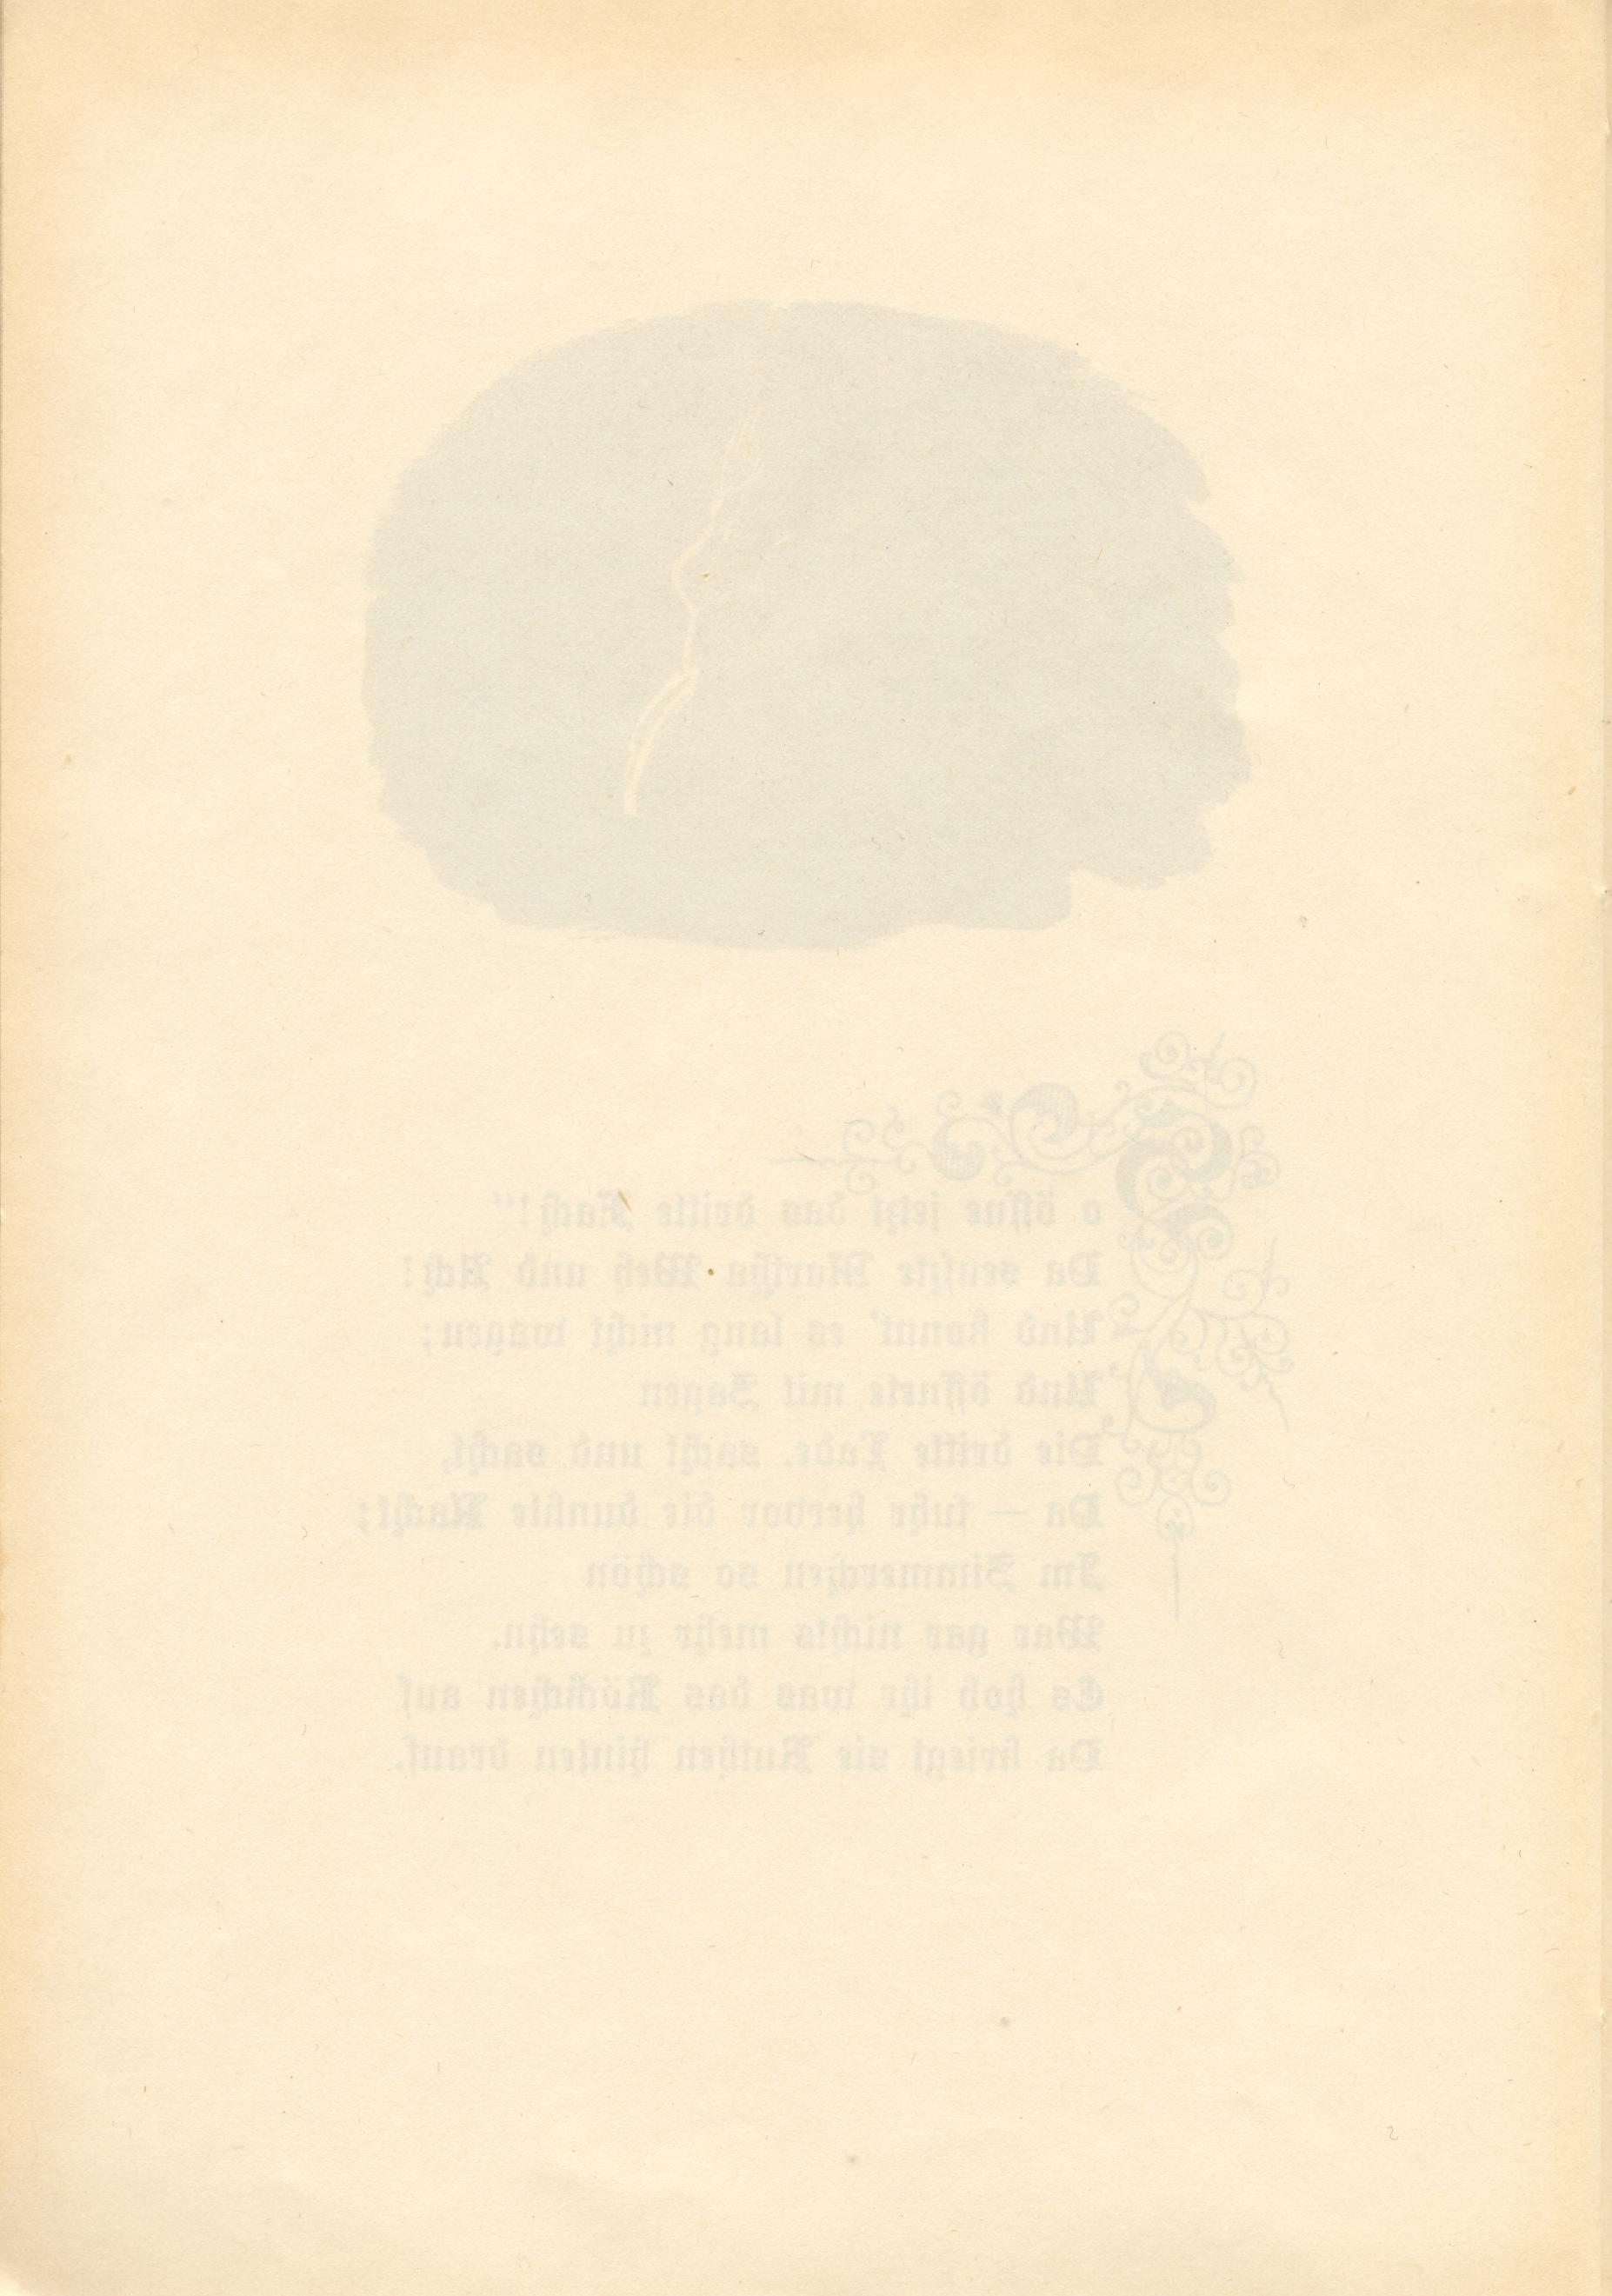 Martha Marzibill (1900) | 26. (24) Main body of text